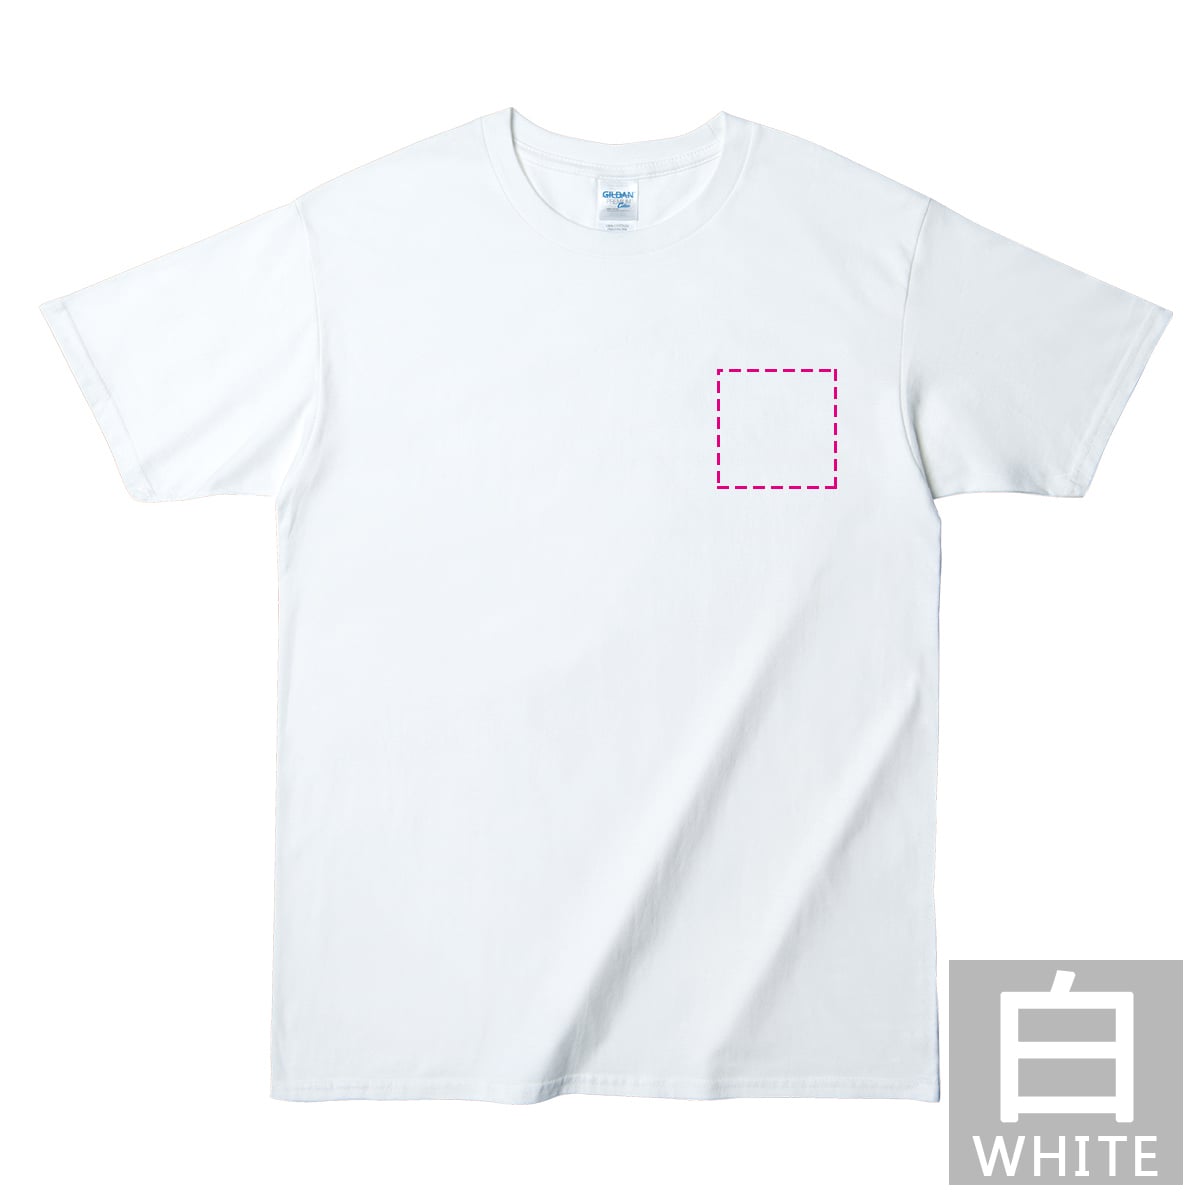 コットンTシャツ / ジャパンフィットTシャツ(メンズ/白) ビッグサイズ / 胸ワンポイントプリント